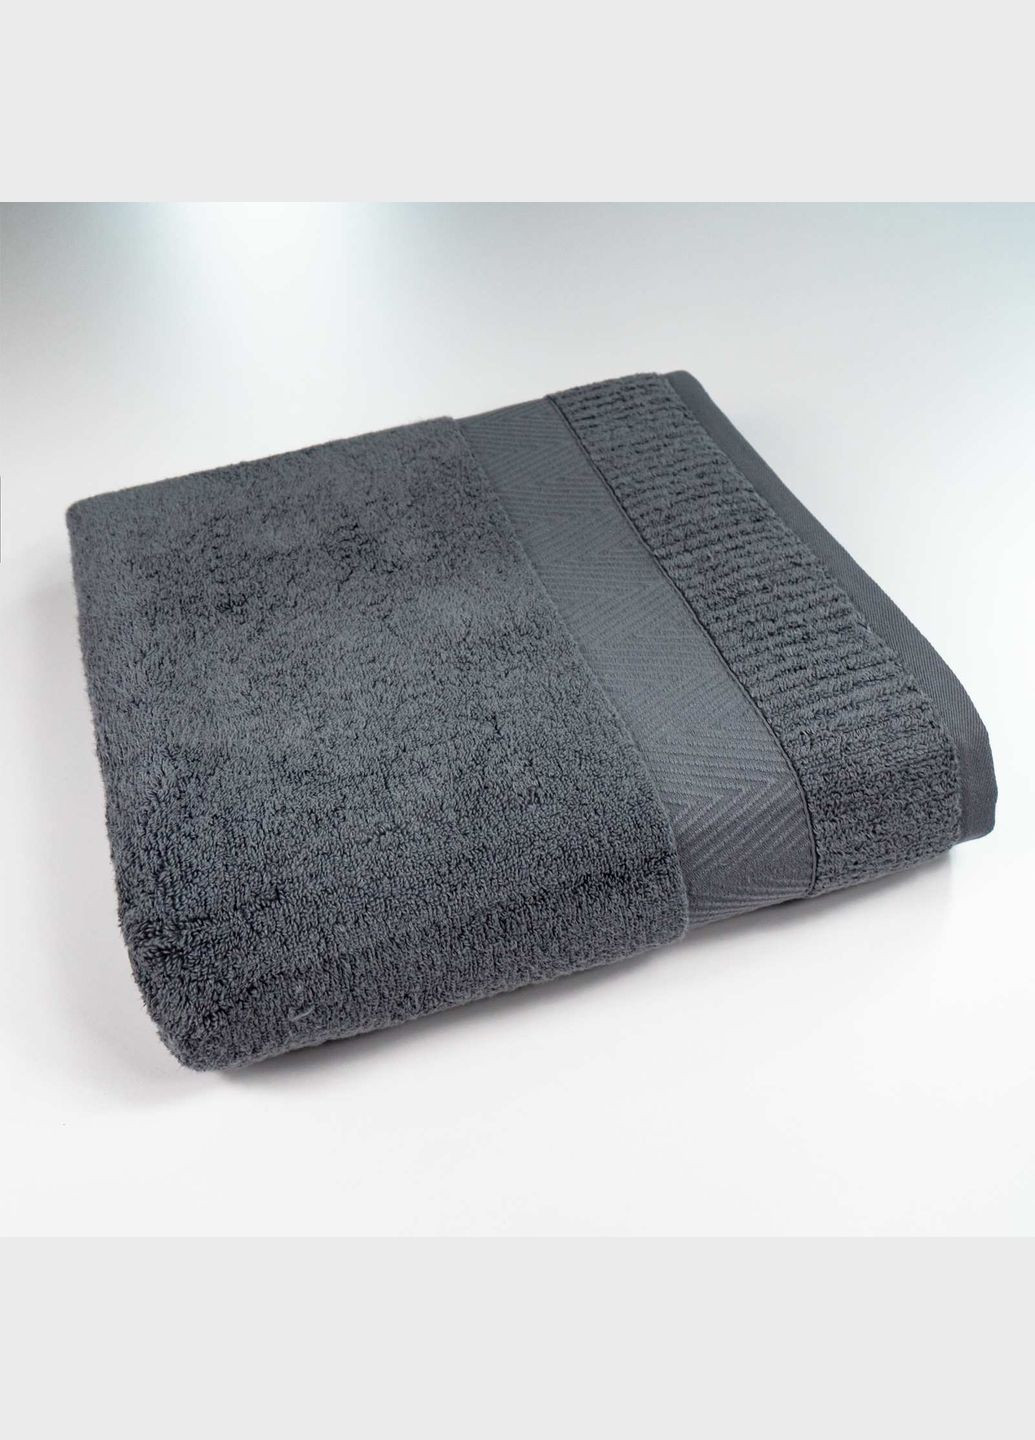 GM Textile банное махровое полотенце 70x140см премиум качества зеро твист бордюр 550г/м2 () серый производство -